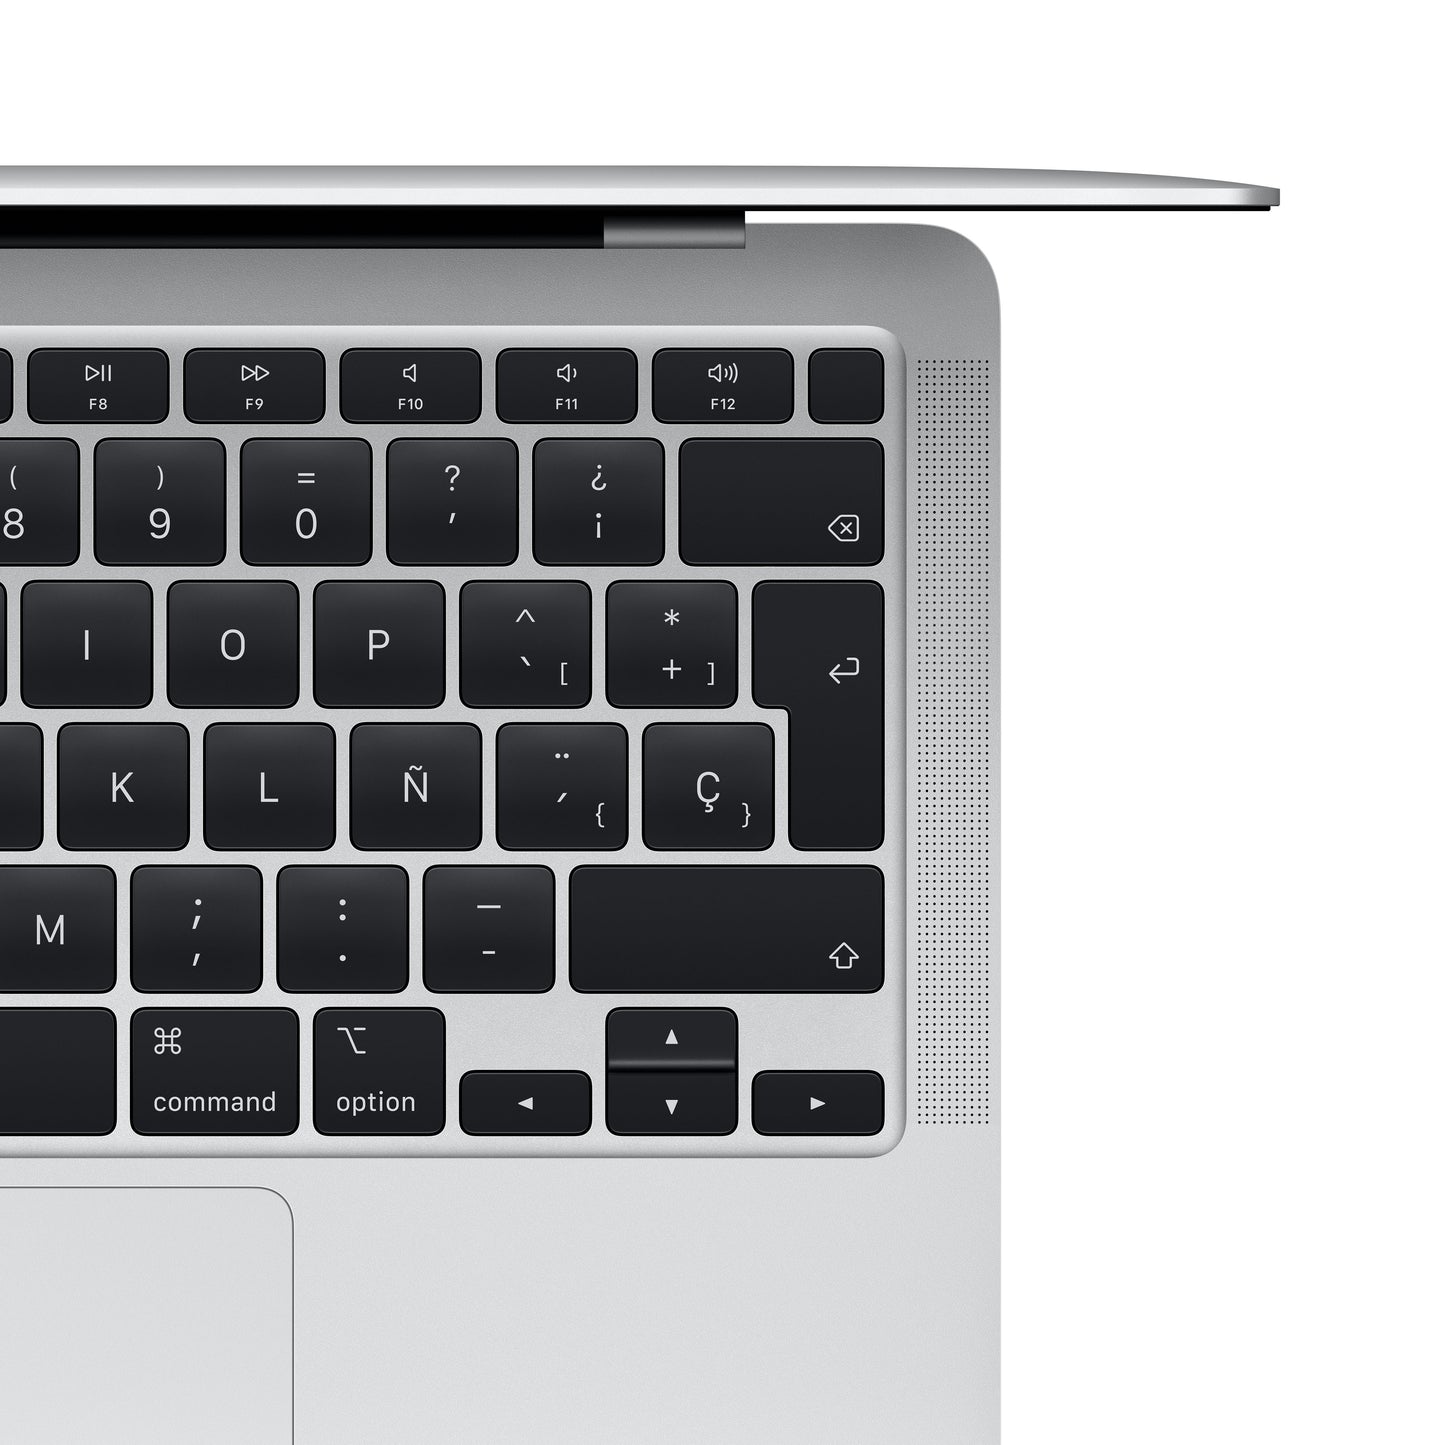 MacBook Air de 13 pulgadas Chip M1 de Apple con CPU de ocho núcleos y GPU de ocho núcleos